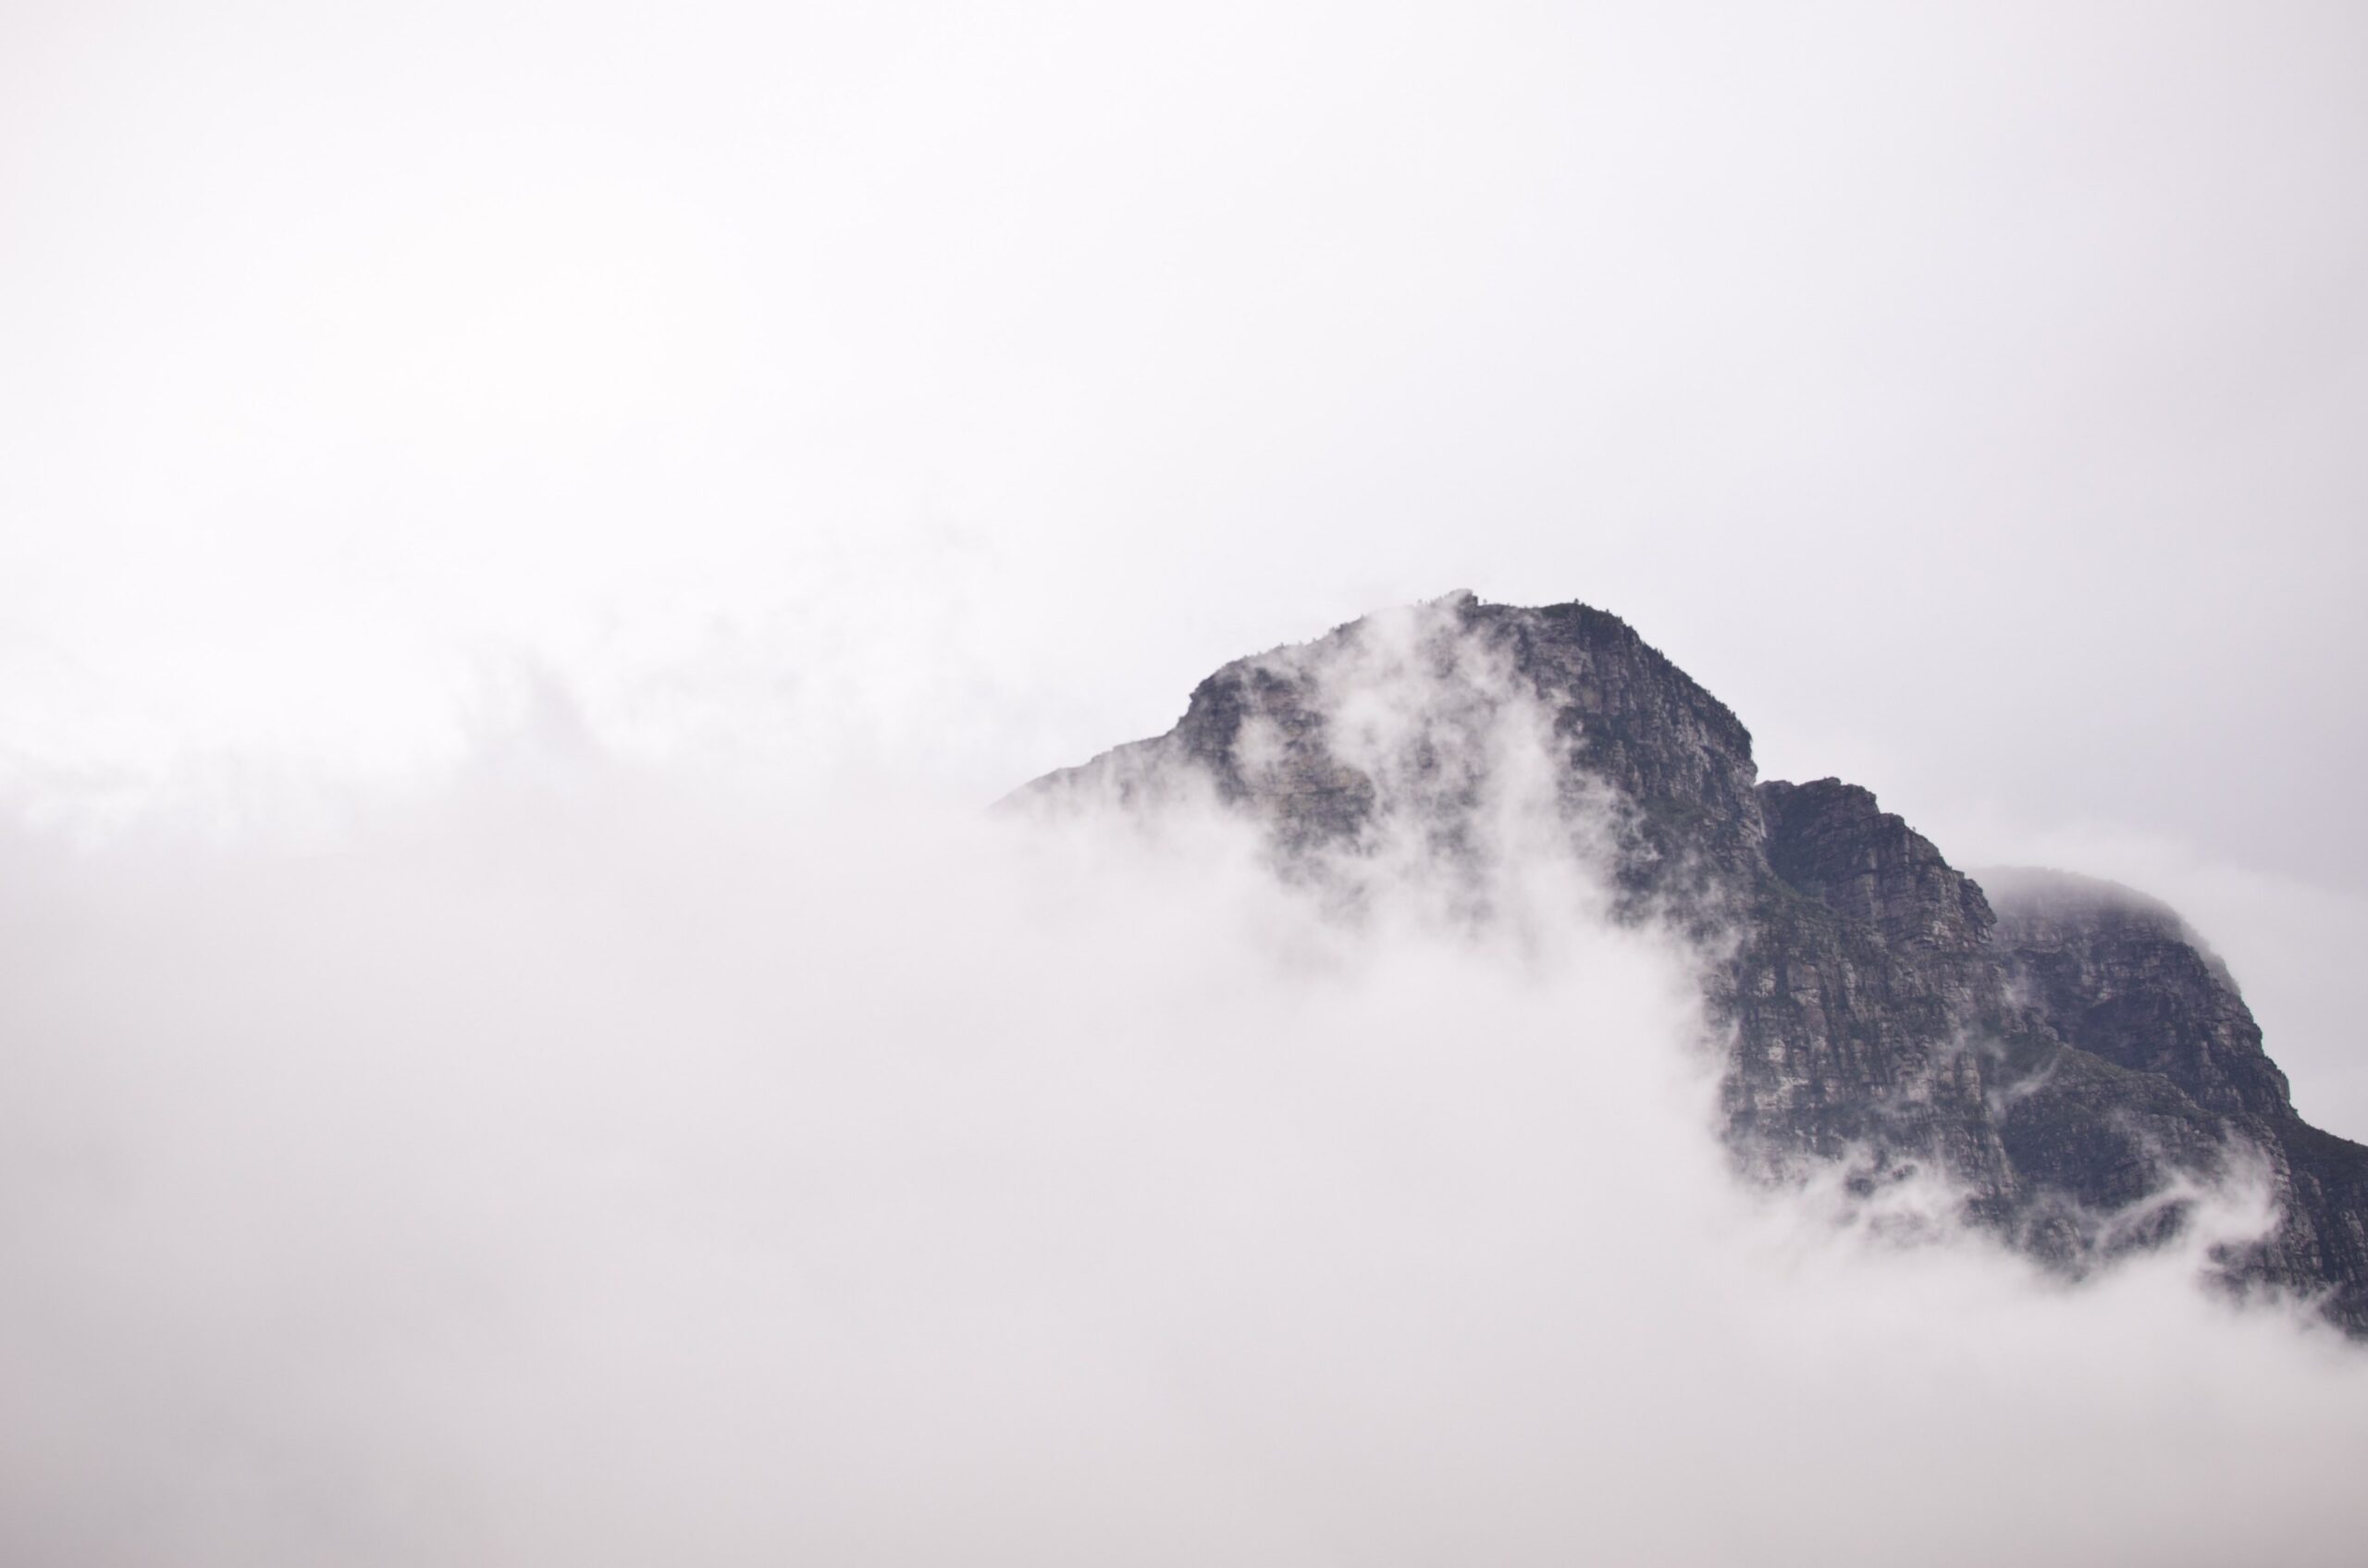 Phong cảnh đám mây lơ lửng trên đỉnh núi 10